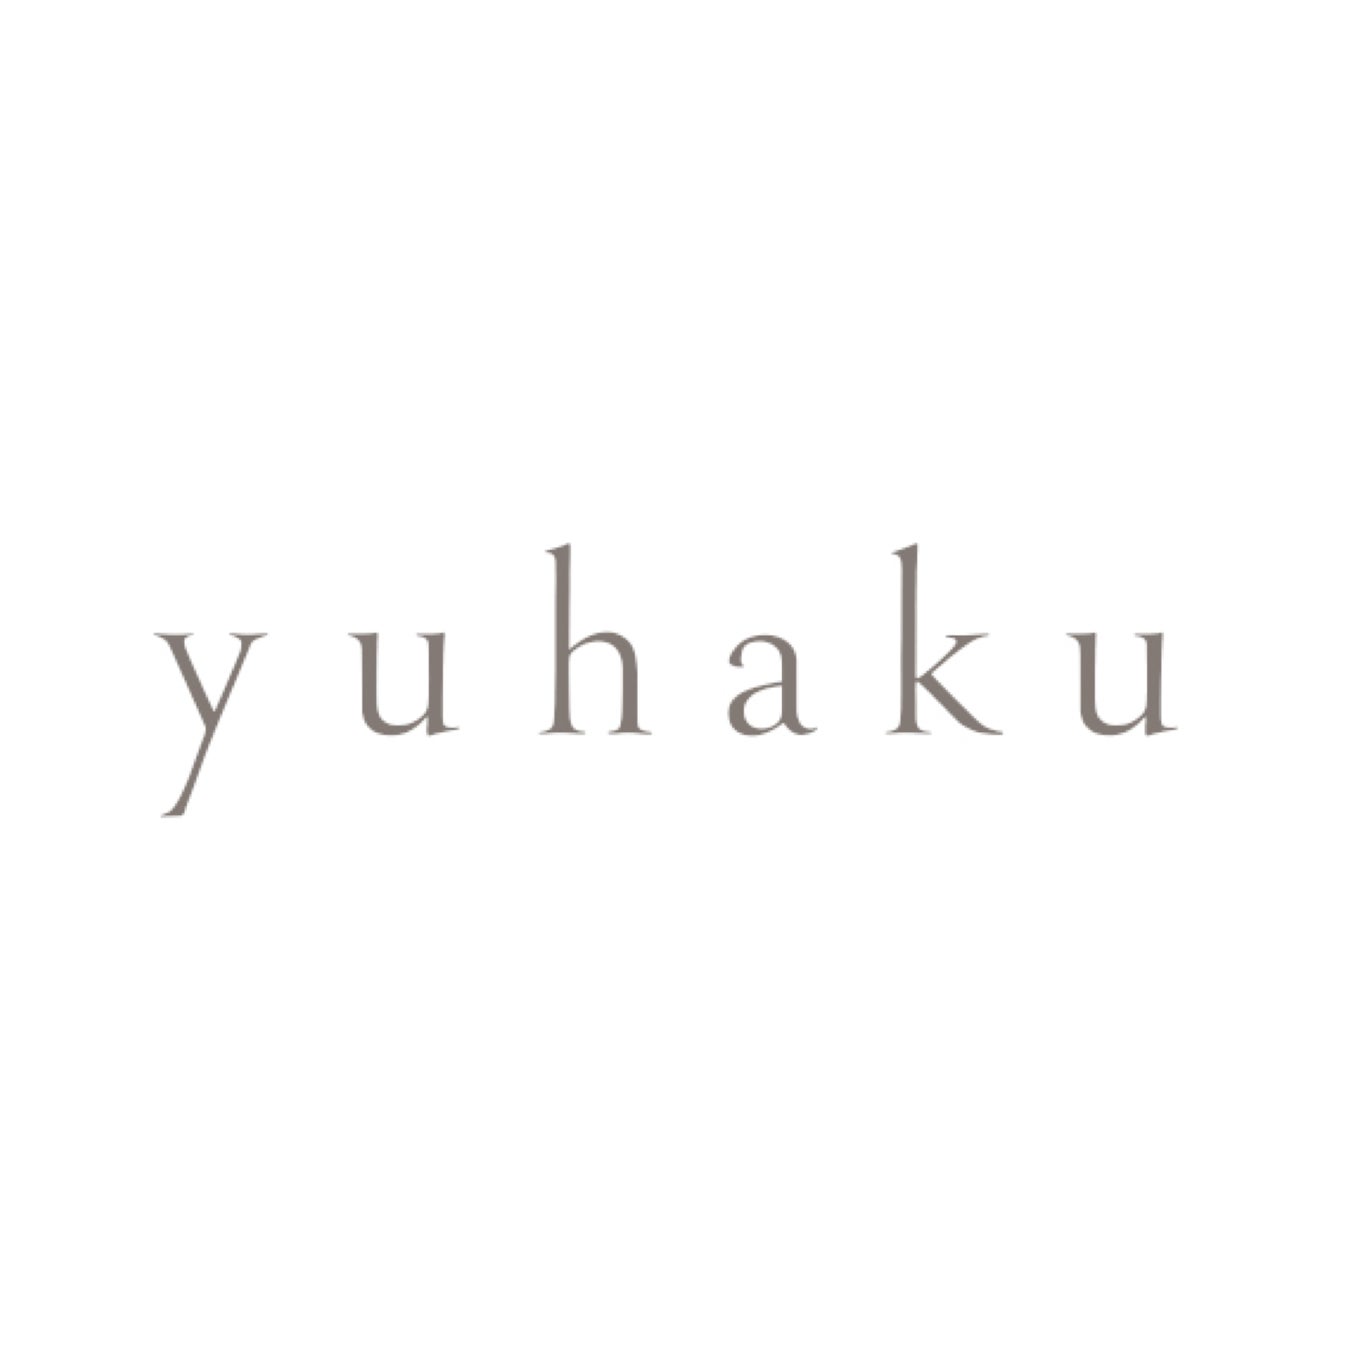 職⼈の⽪⾰研究を⽬的とした下取りサービス「Next yuhaku キャンペーン」。よりサステナブルなものづくりに向けてレザーブランド「yuhaku（ユハク）」が直営3店舗で開始。のサブ画像3